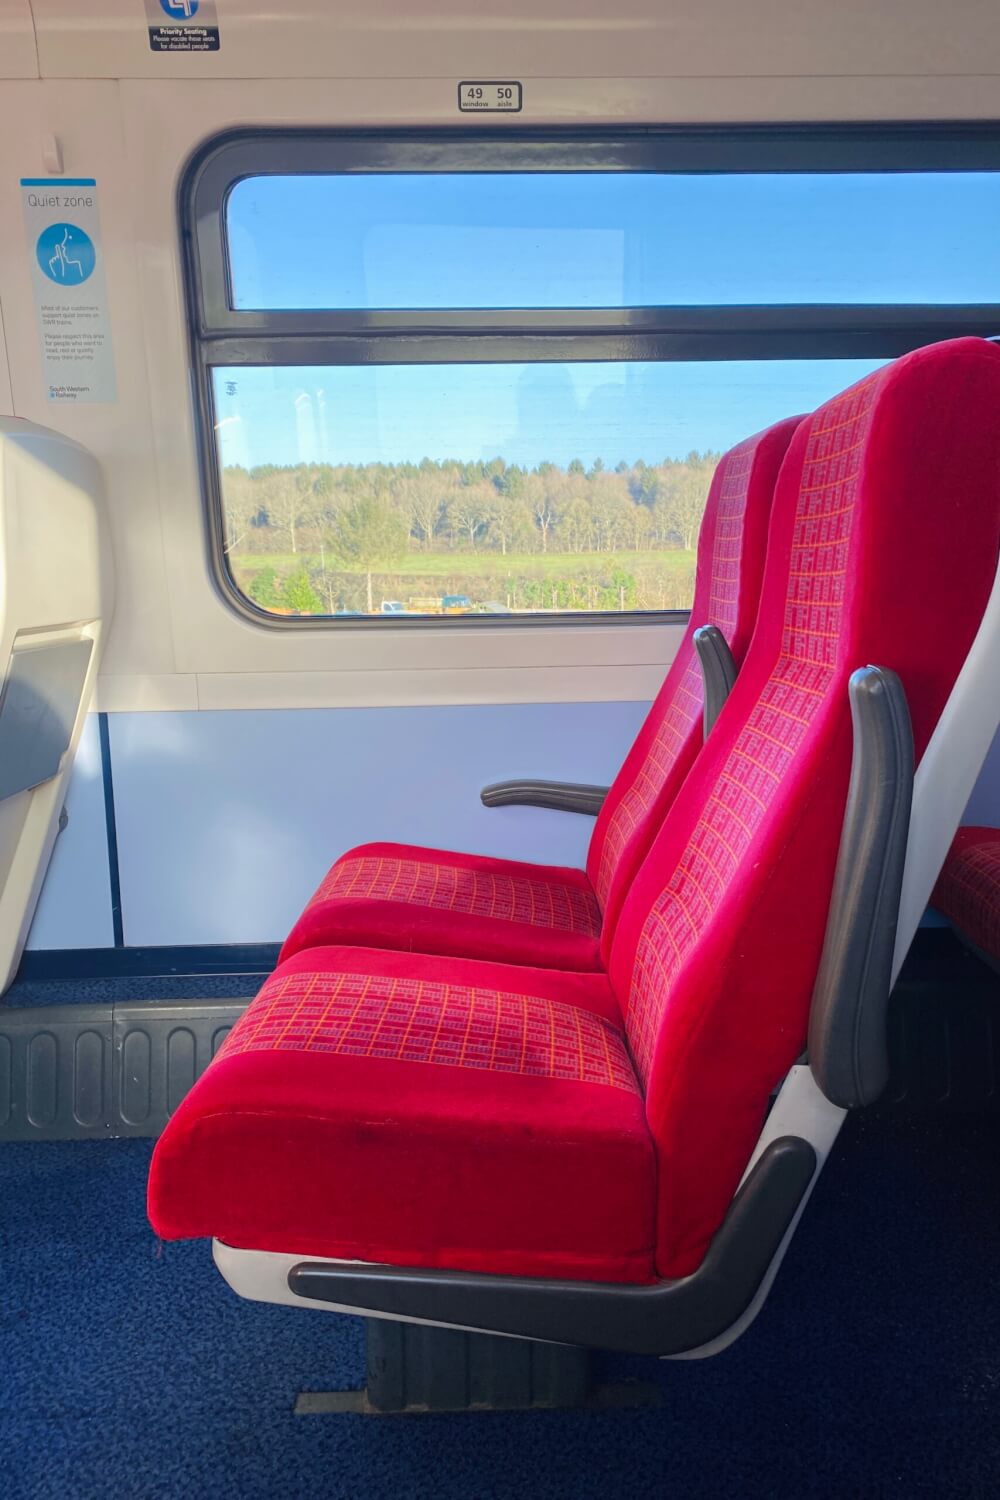 train journey around uk